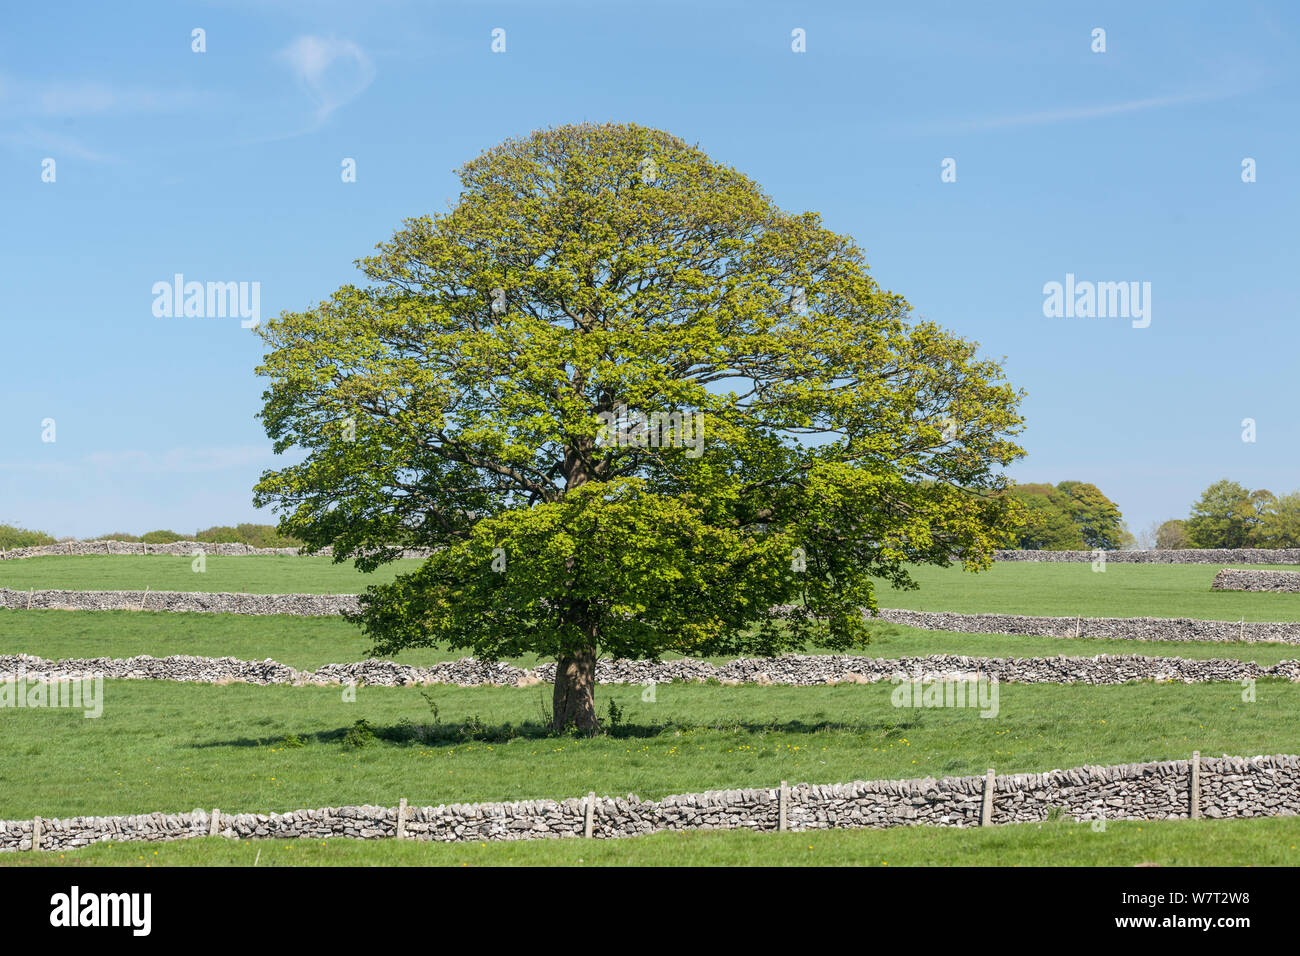 Sycomore (Acer pseudoplatanus) et murs en pierre sèche, près de Monyash, Derbyshire, Angleterre, Royaume-Uni, mai 2013. Banque D'Images